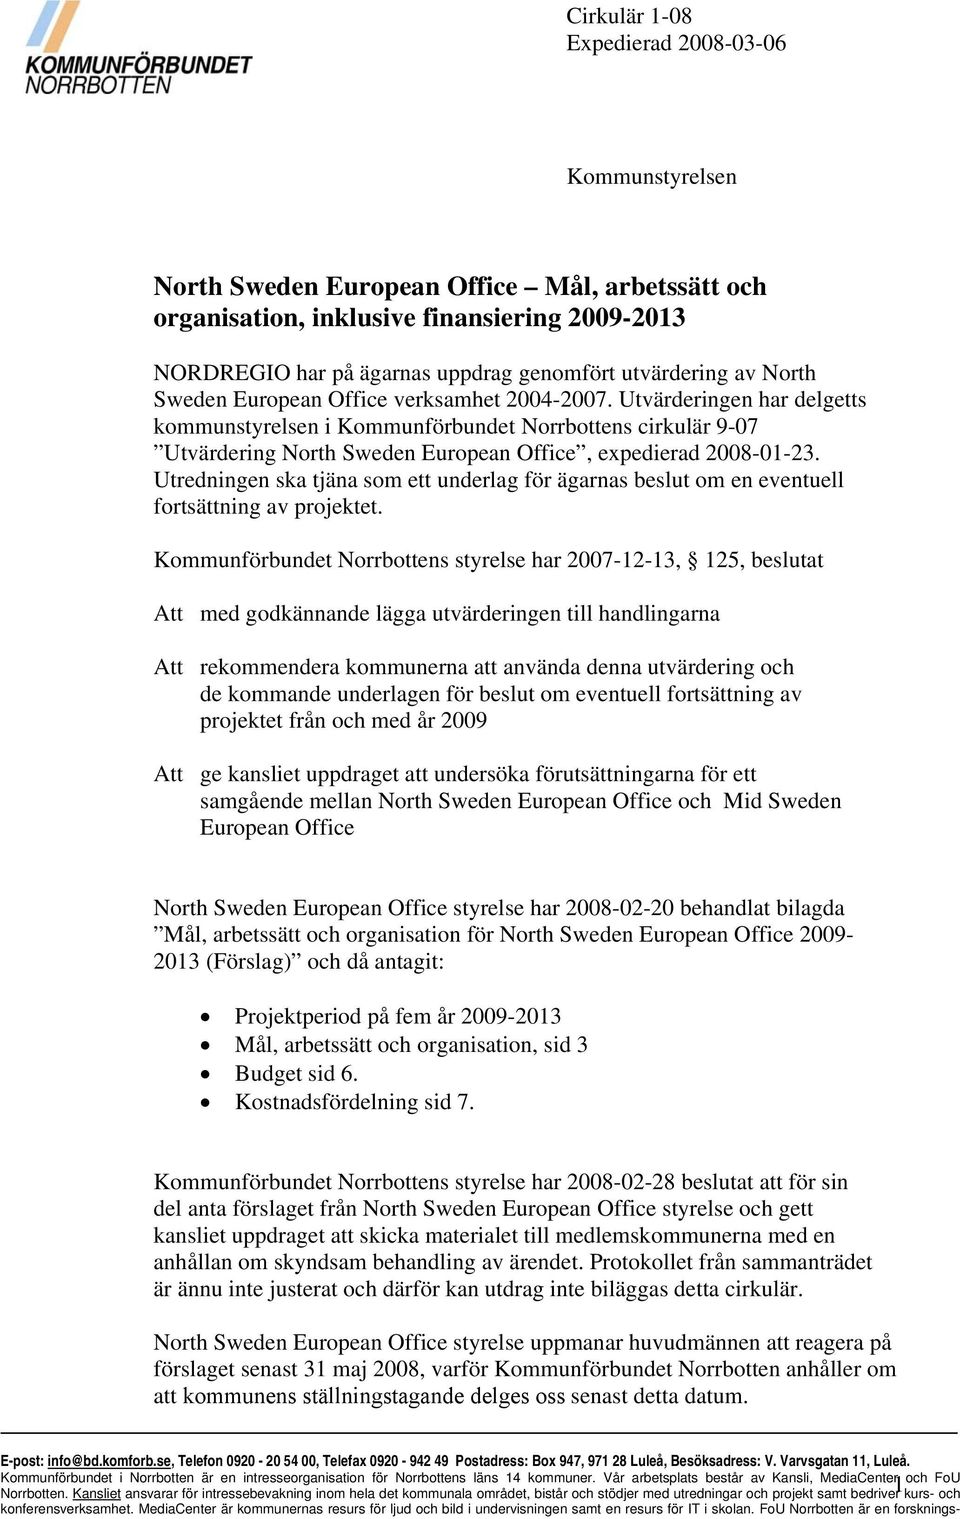 Utvärderingen har delgetts kommunstyrelsen i Kommunförbundet Norrbottens cirkulär 9-07 Utvärdering North Sweden European Office, expedierad 2008-01-23.